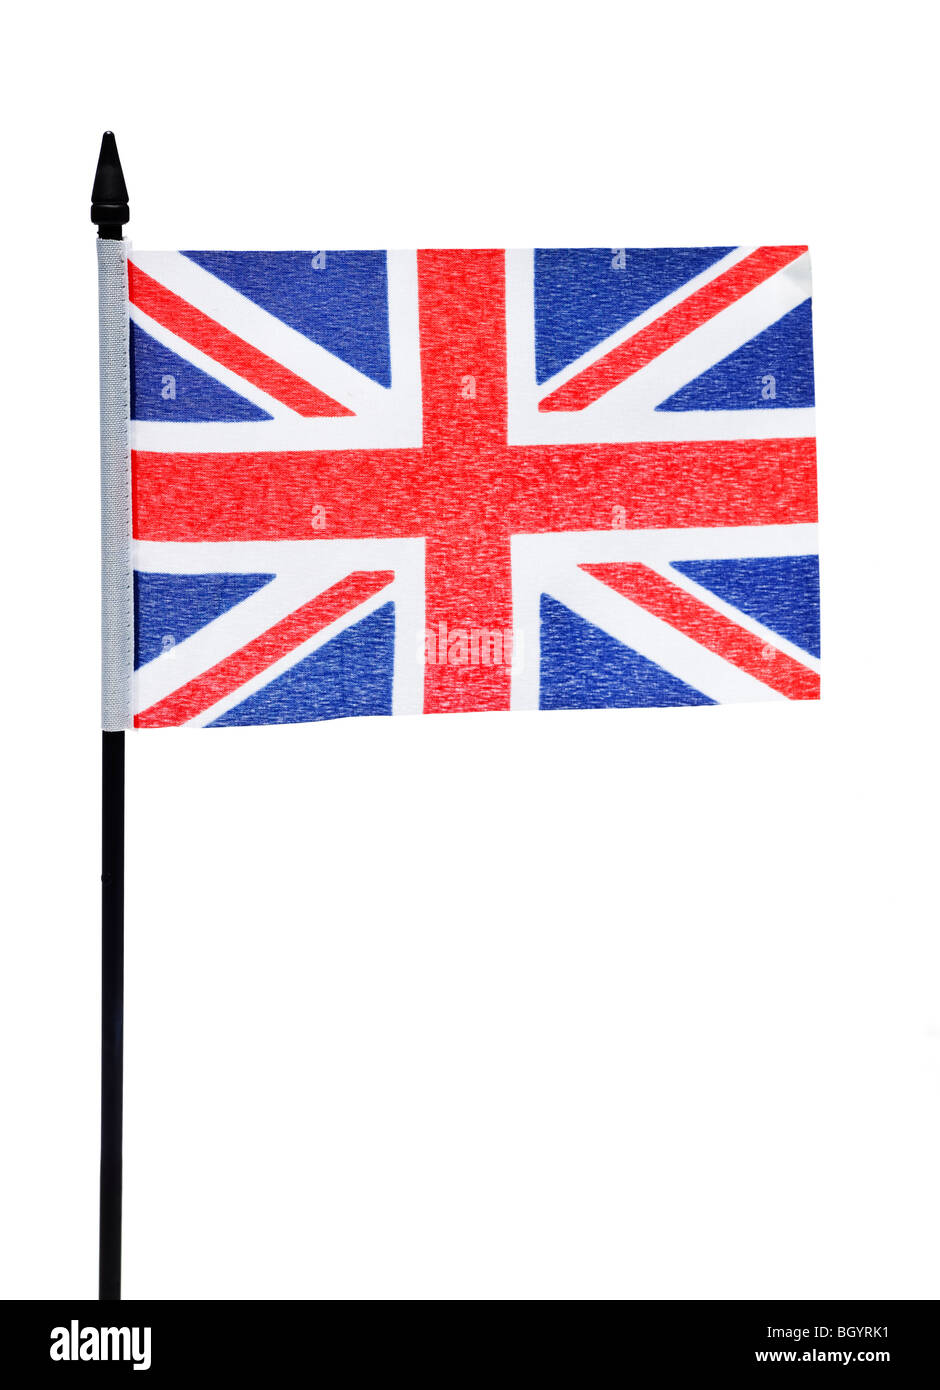 Union Jack-Flagge des Vereinigten Königreichs Großbritannien und Nordirland Stockfoto